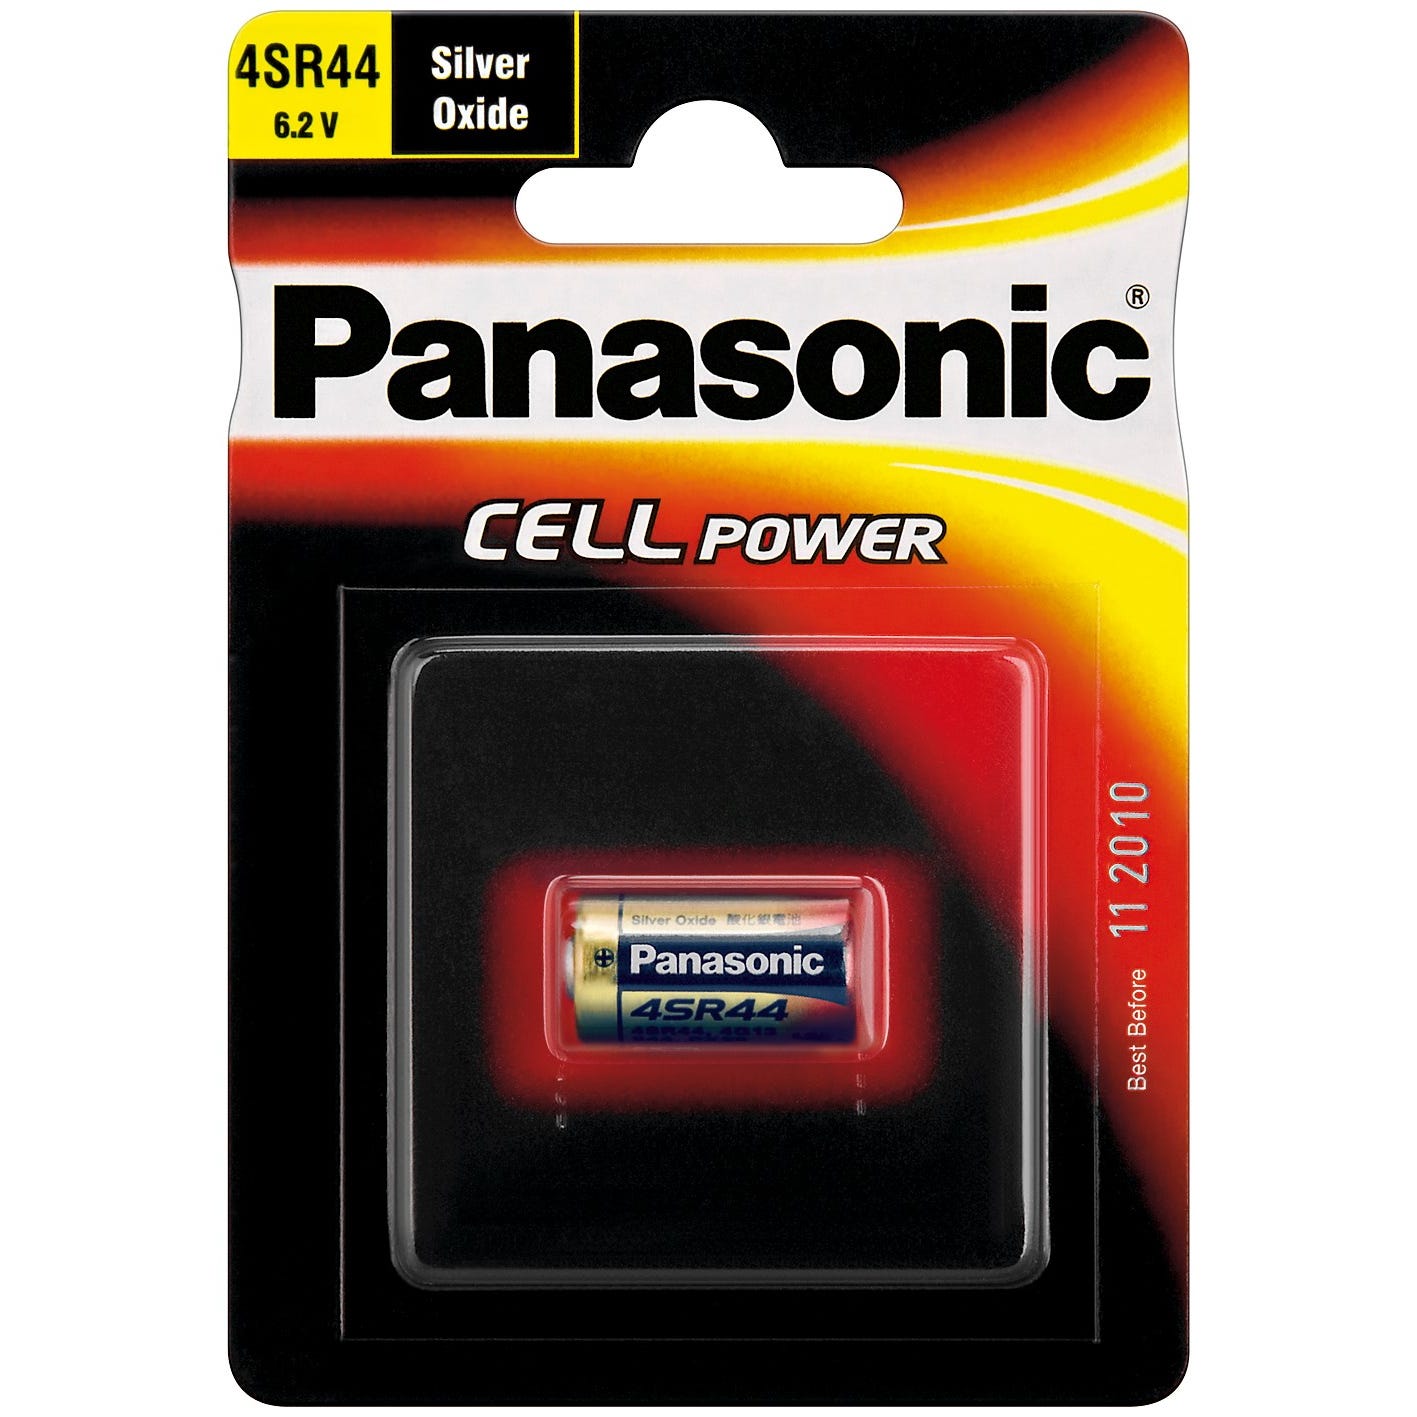 PANASONIC Pile Cell Power silver Oxide 6,2 V 4SR44 / V28PX / 476 1